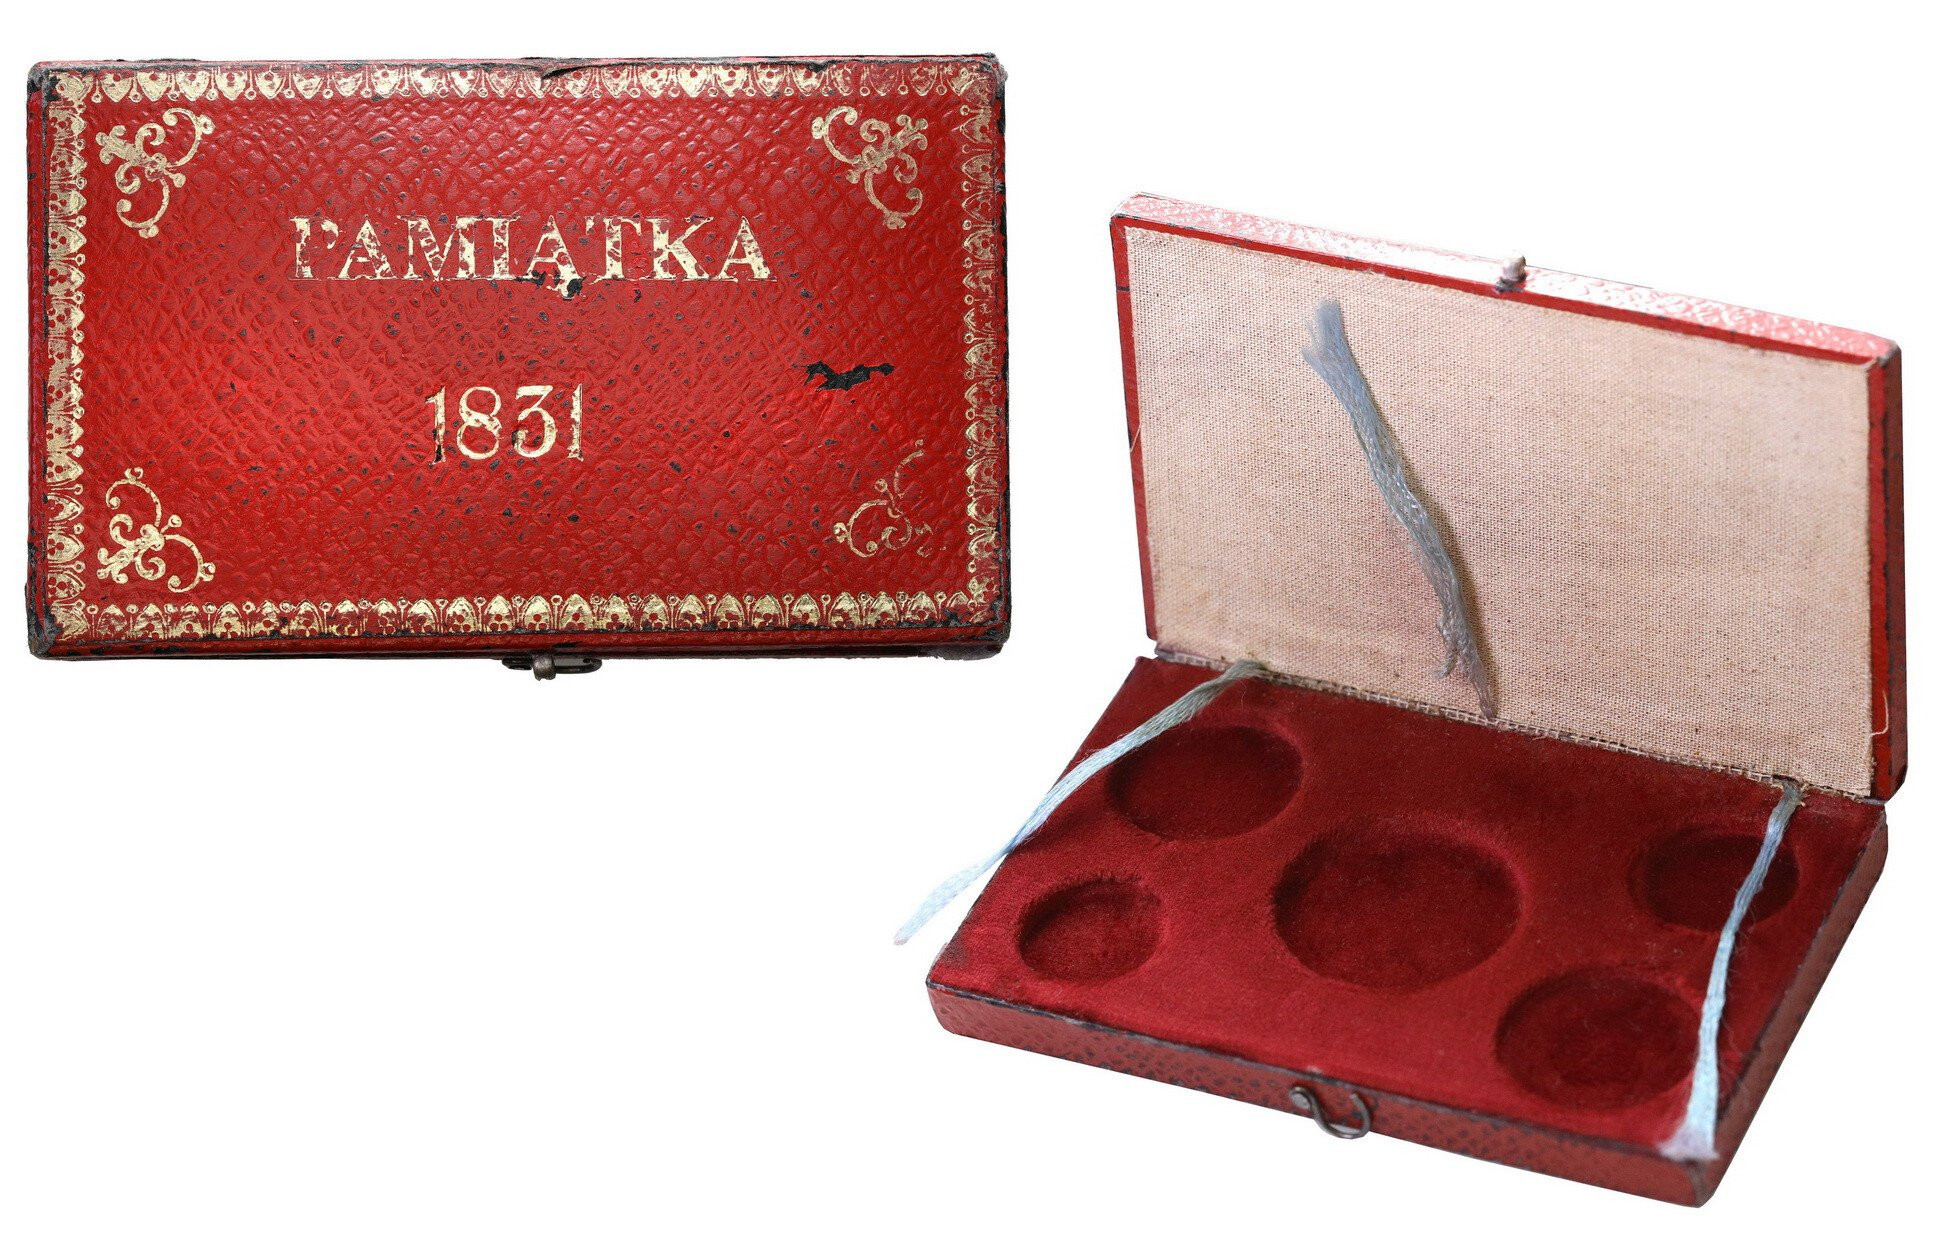 Powstanie Listopadowe, pudełko na monety i banknot, PAMIĄTKA 1831 